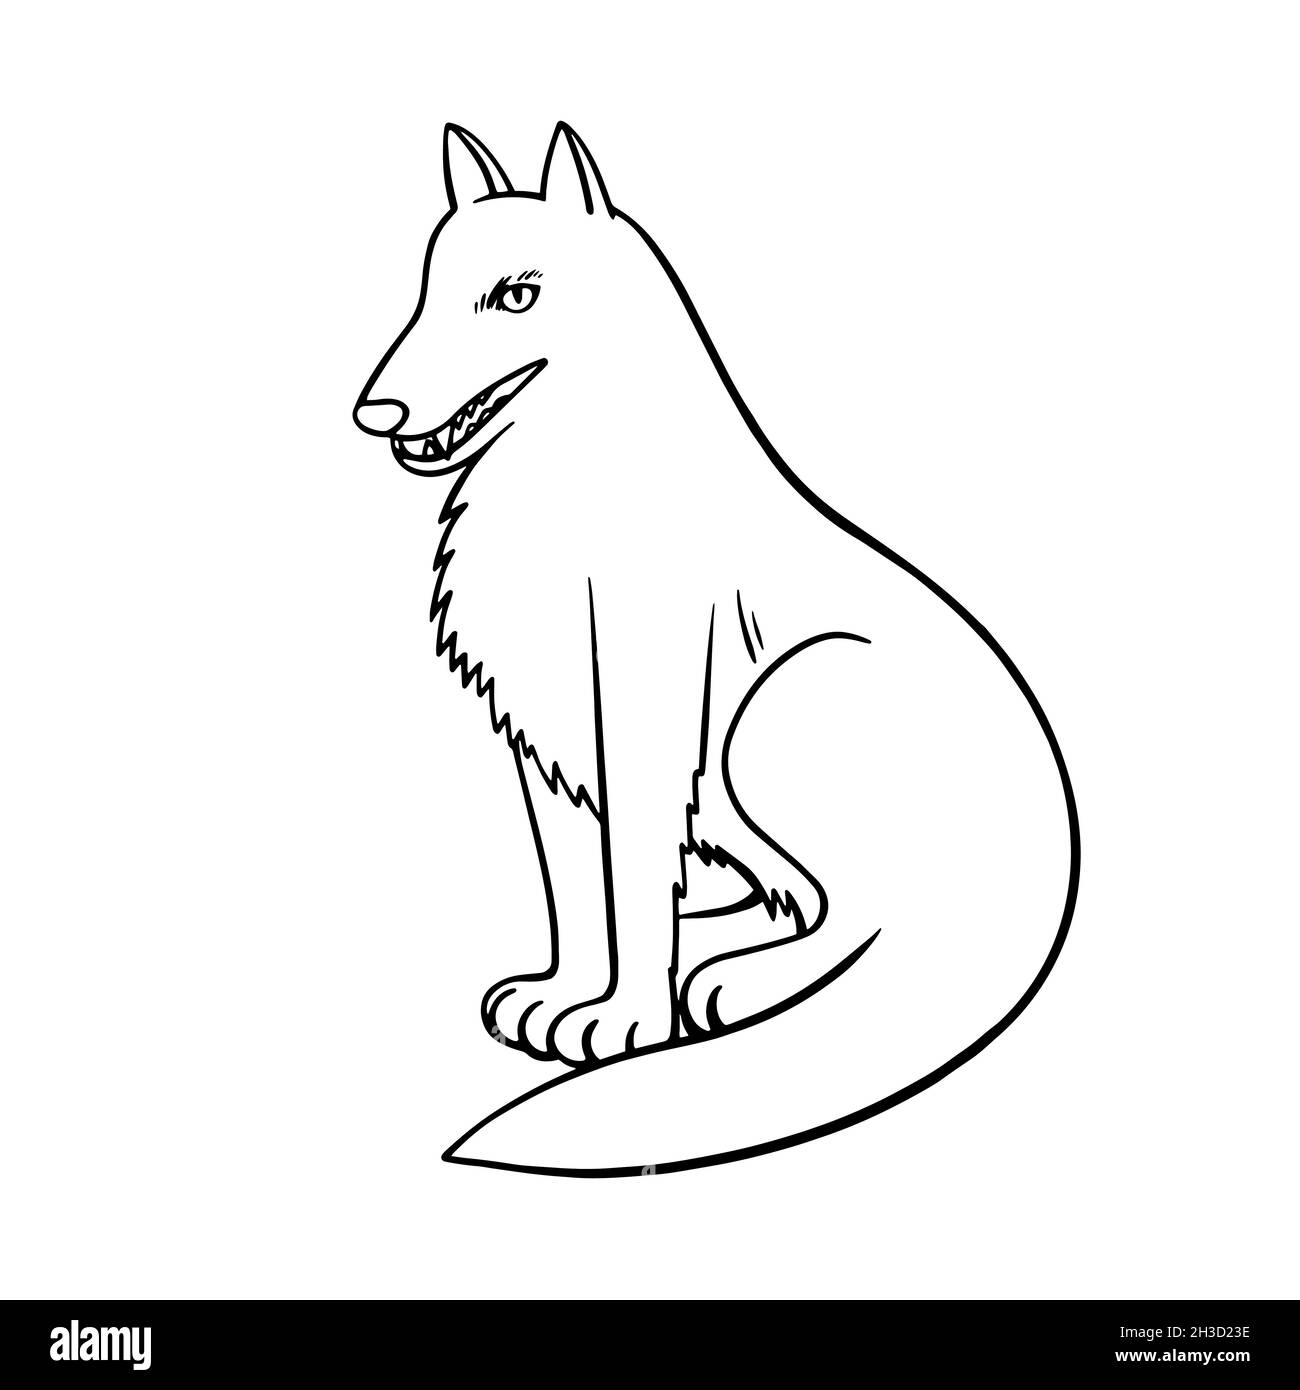 Loup noir et blanc dans un joli style de dessin animé semi-réaliste.Illustration d'une ligne dessinée à la main. Illustration de Vecteur